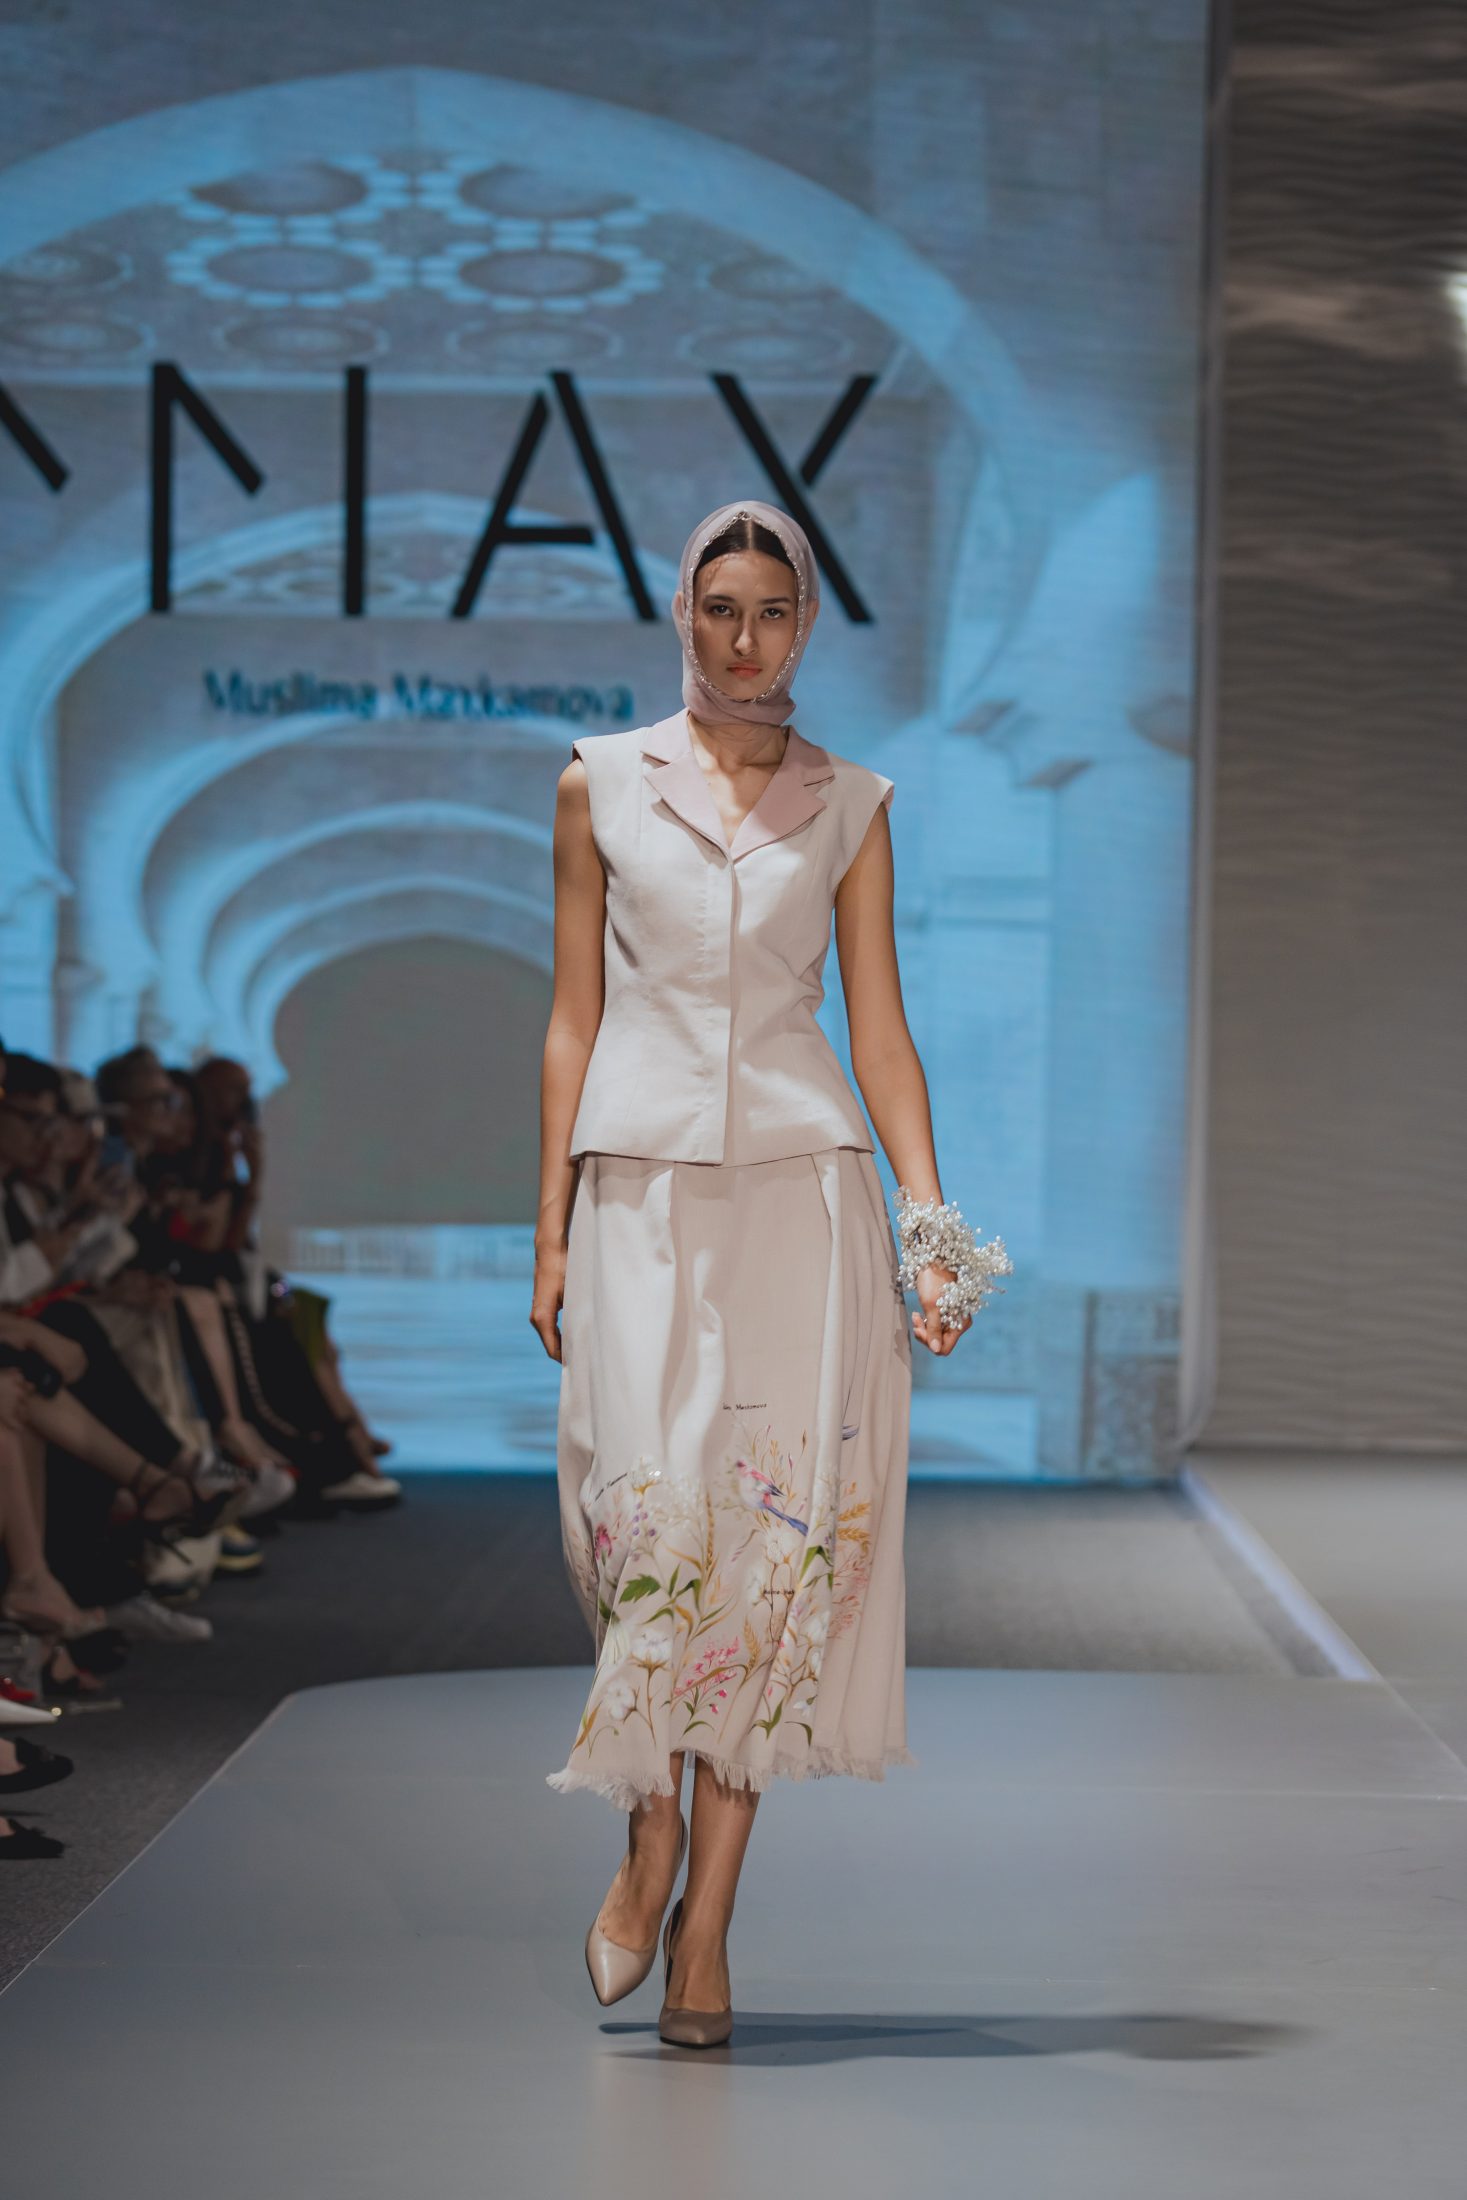 Природа, море и Эми Уайнхаус: второй день Visa Fashion Week Tashkent